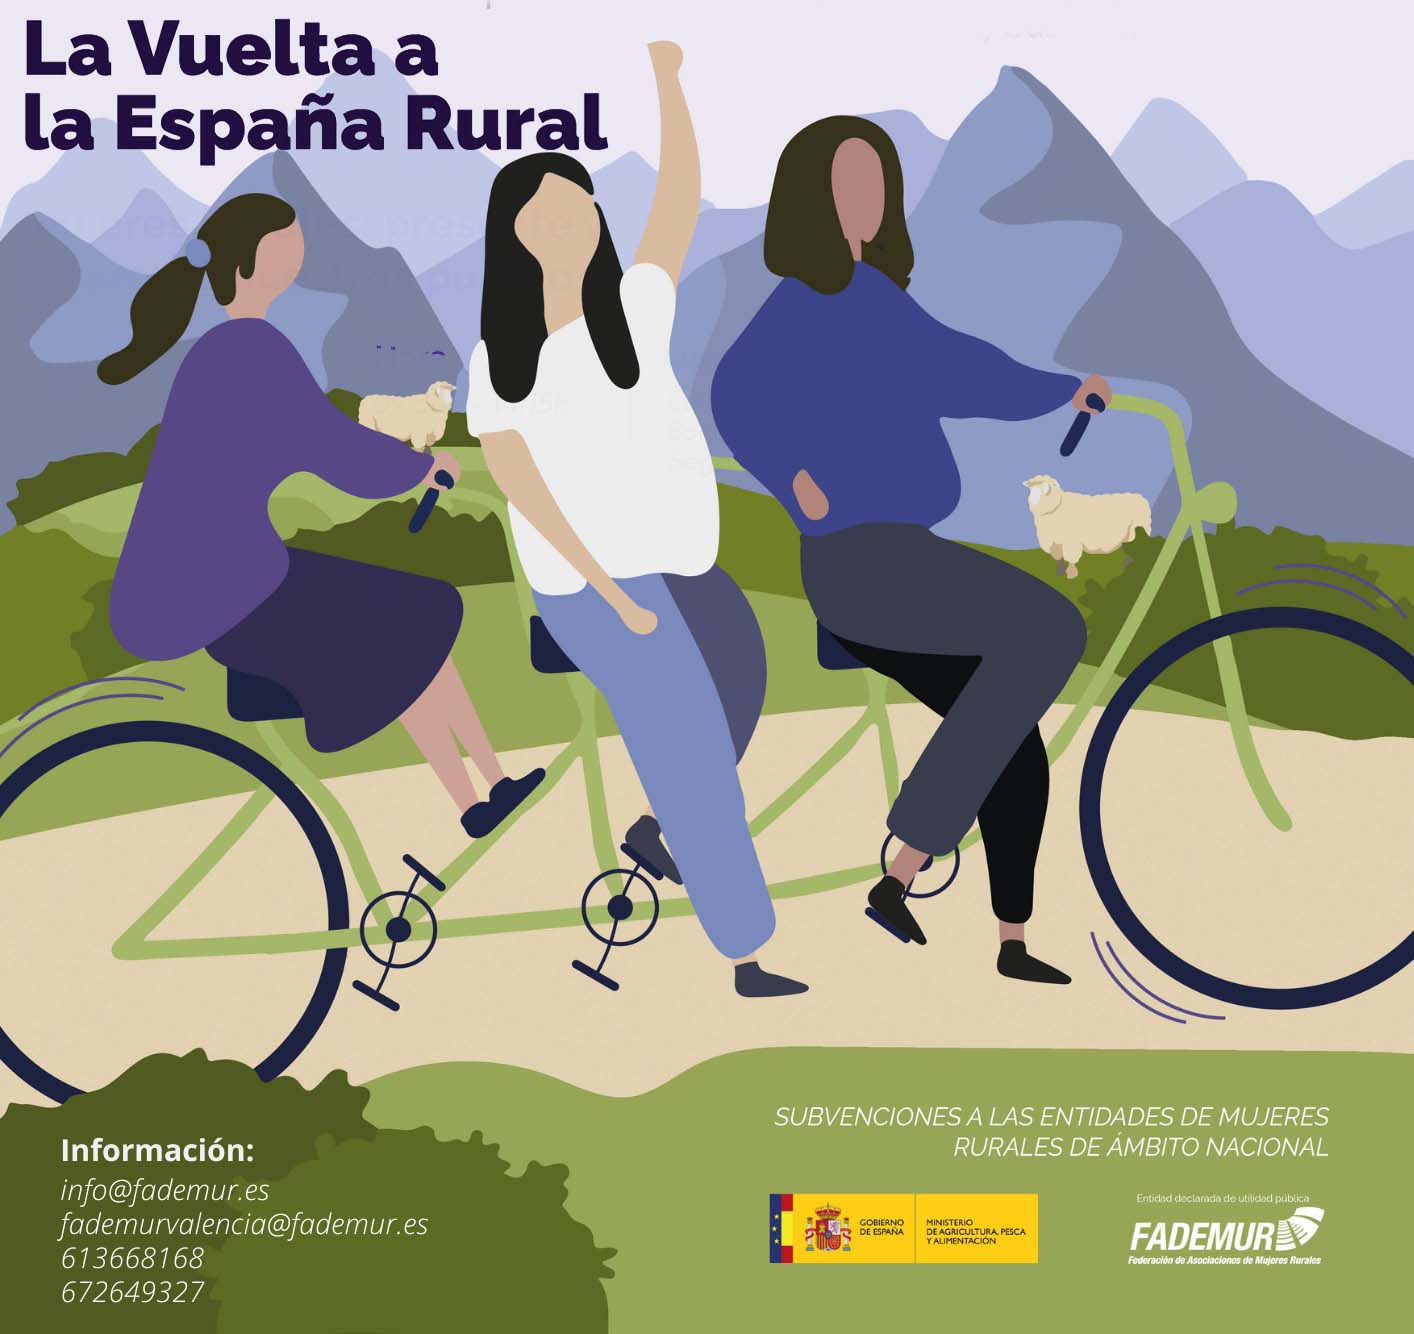 La Vuelta a la España Rural